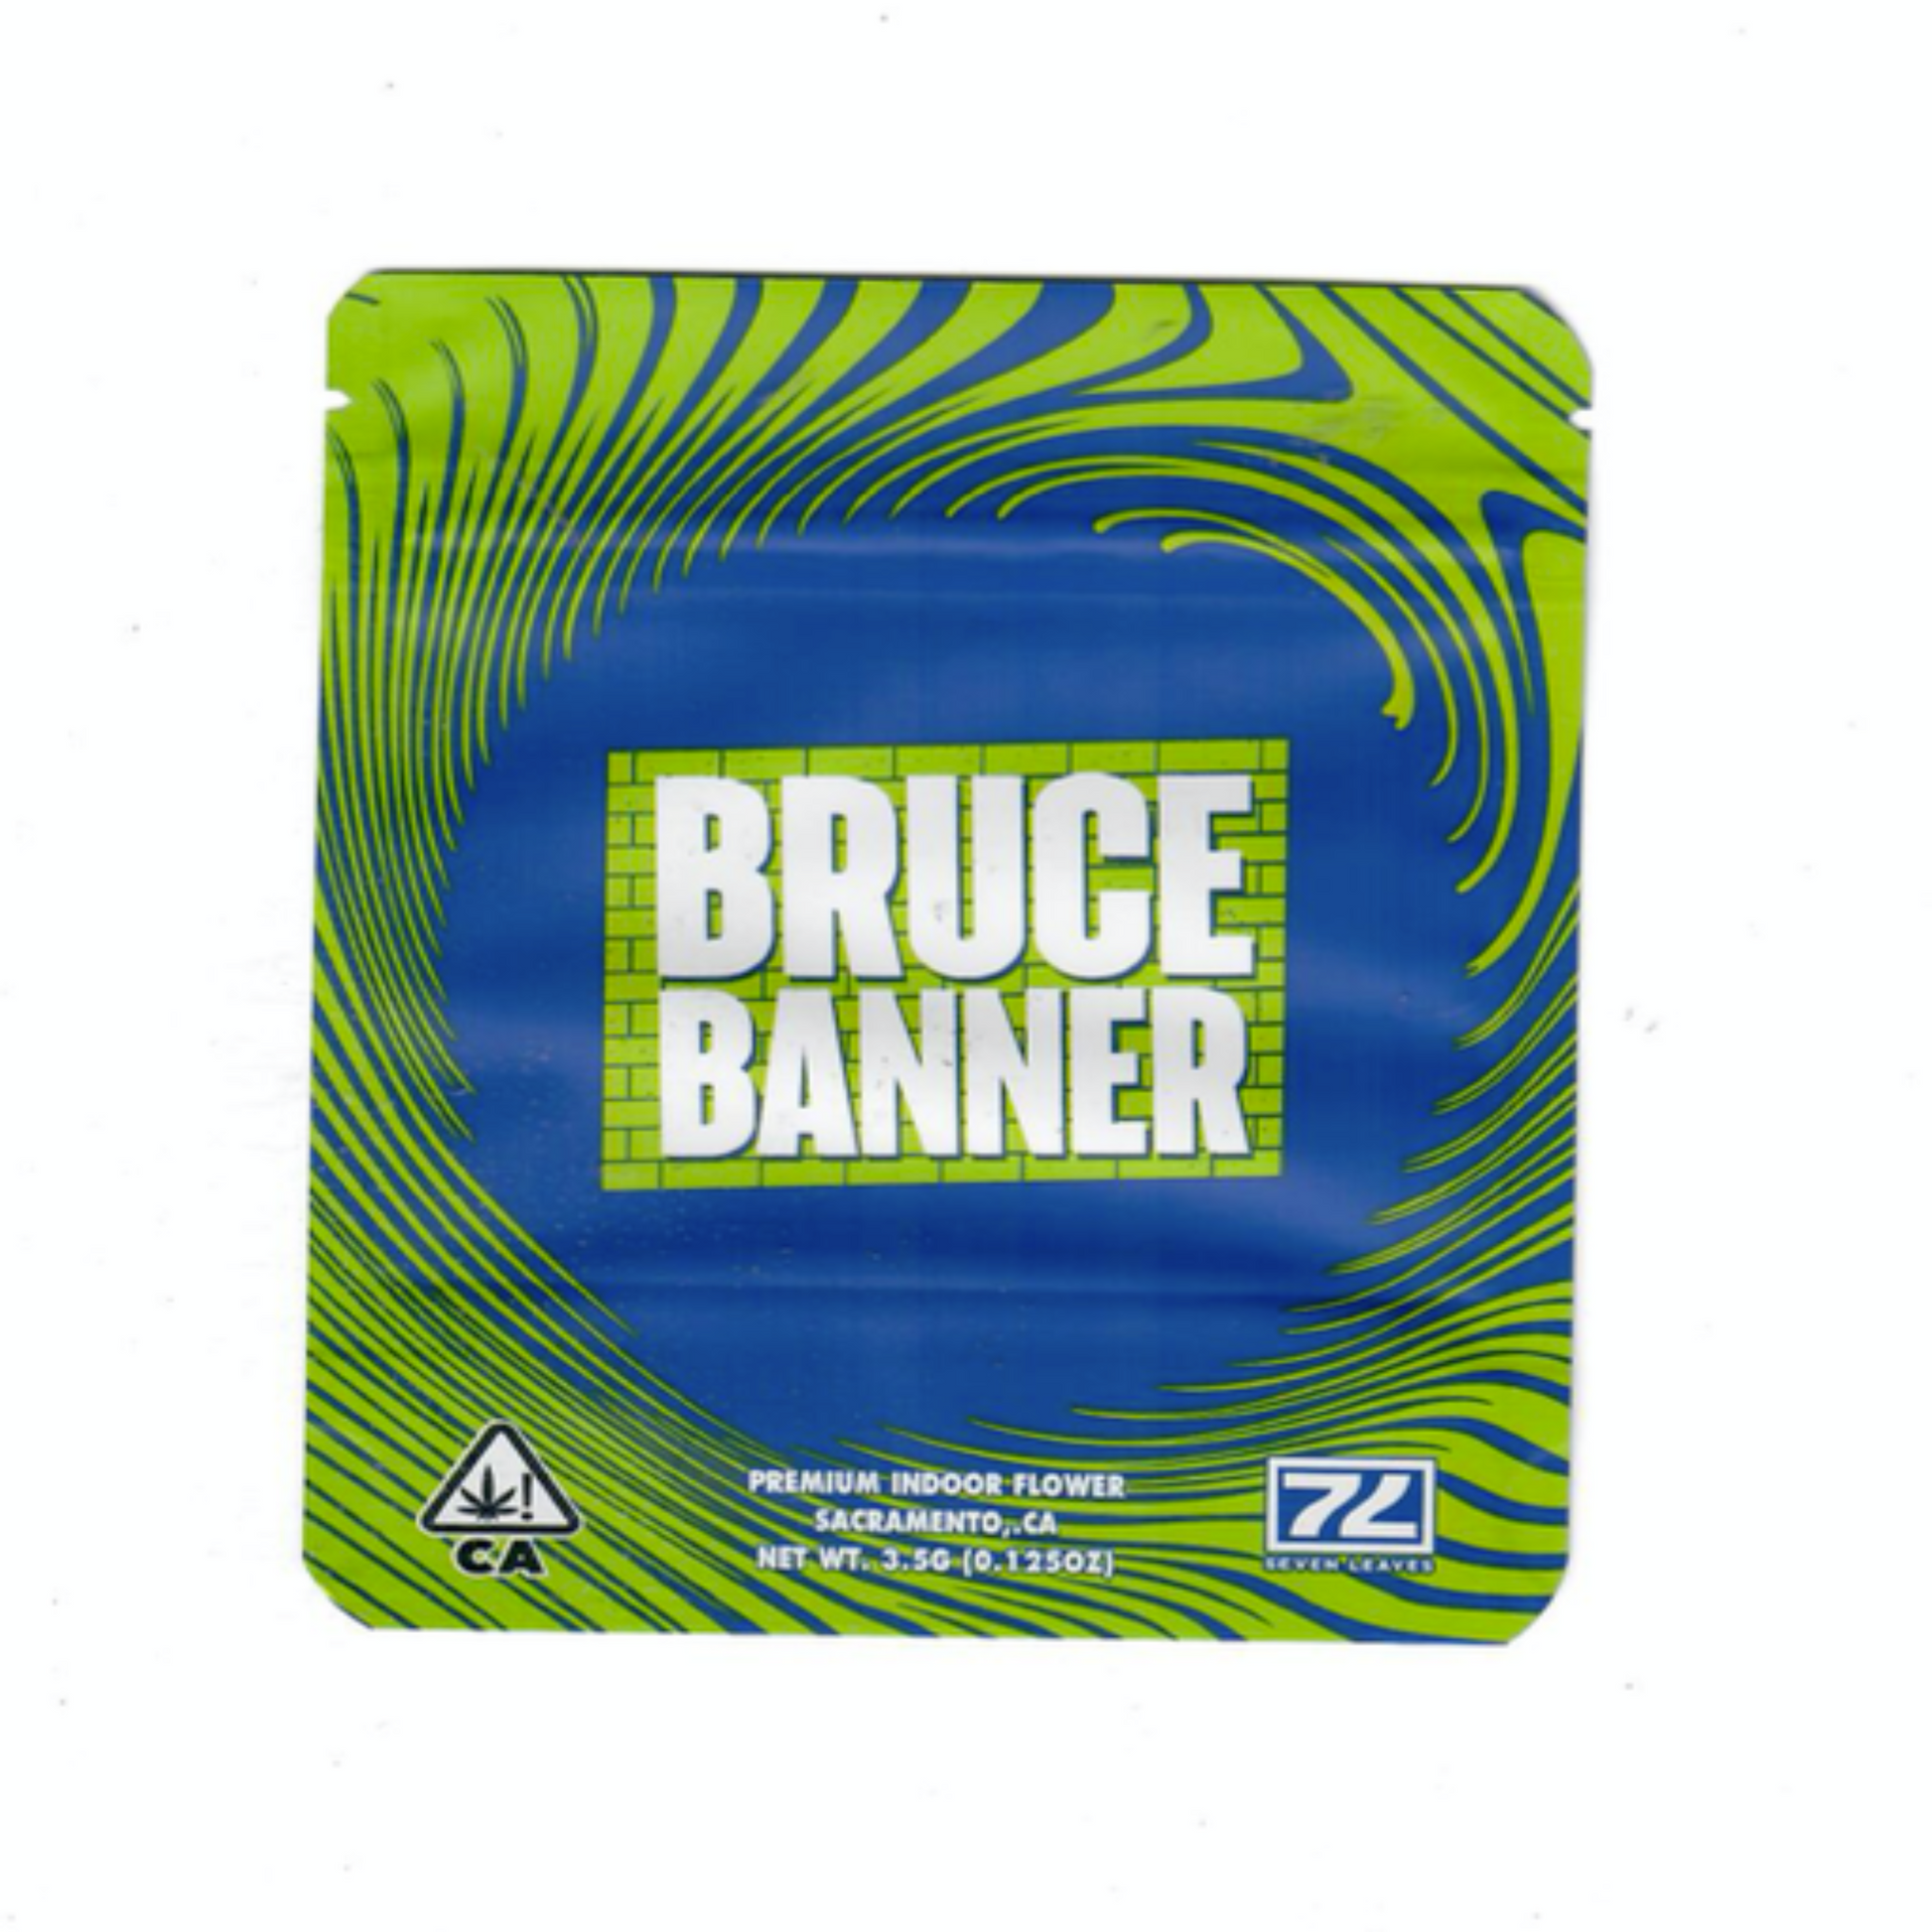 7Leaves Bruce Banner Mylar Bags